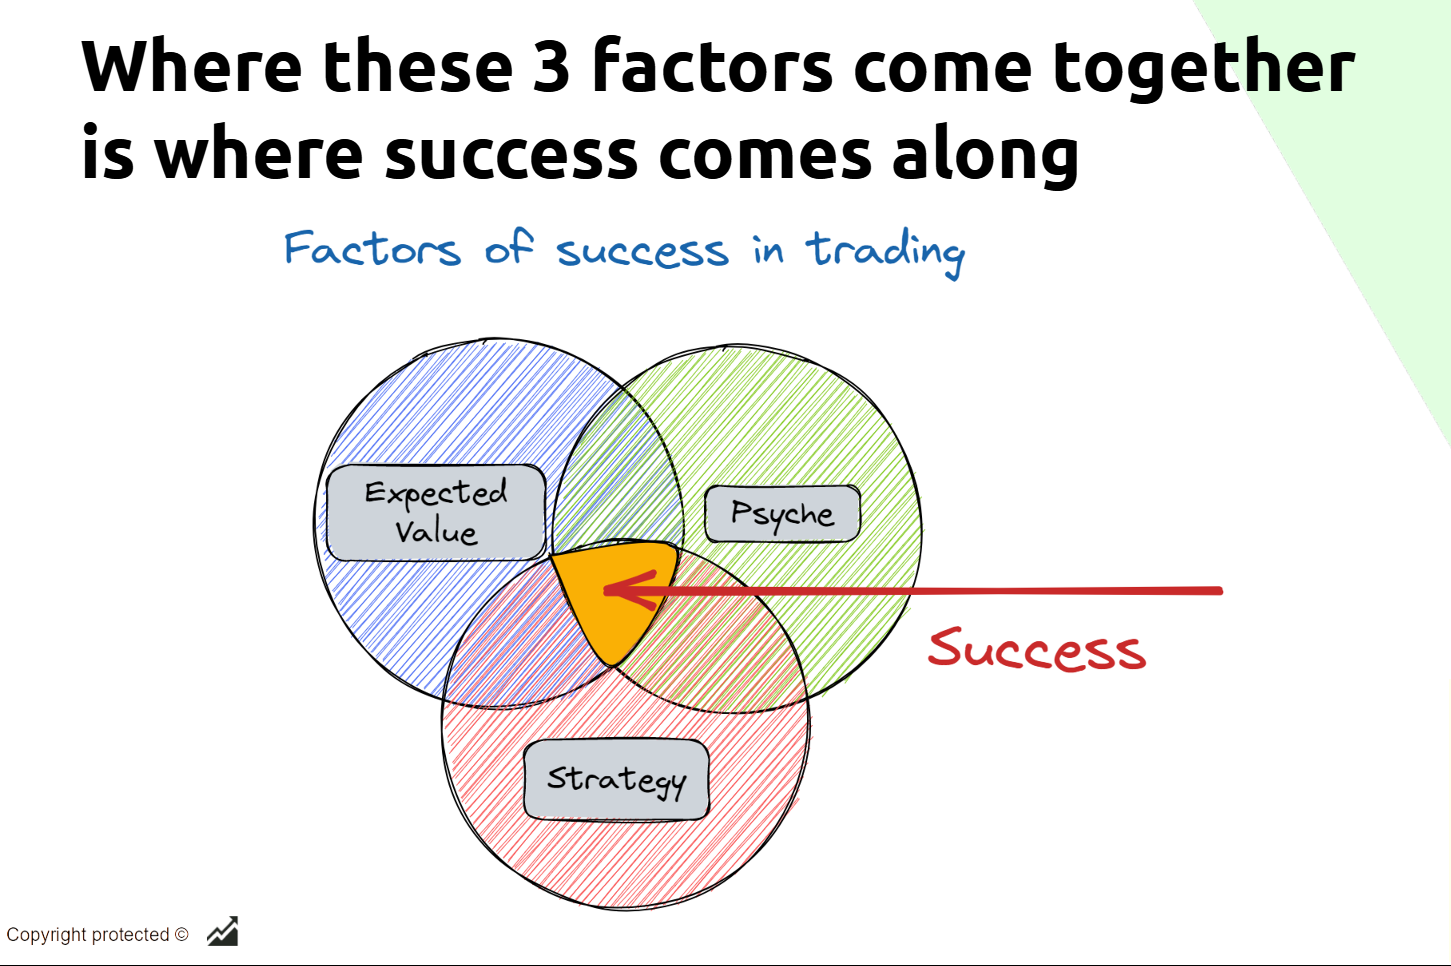 3 factors